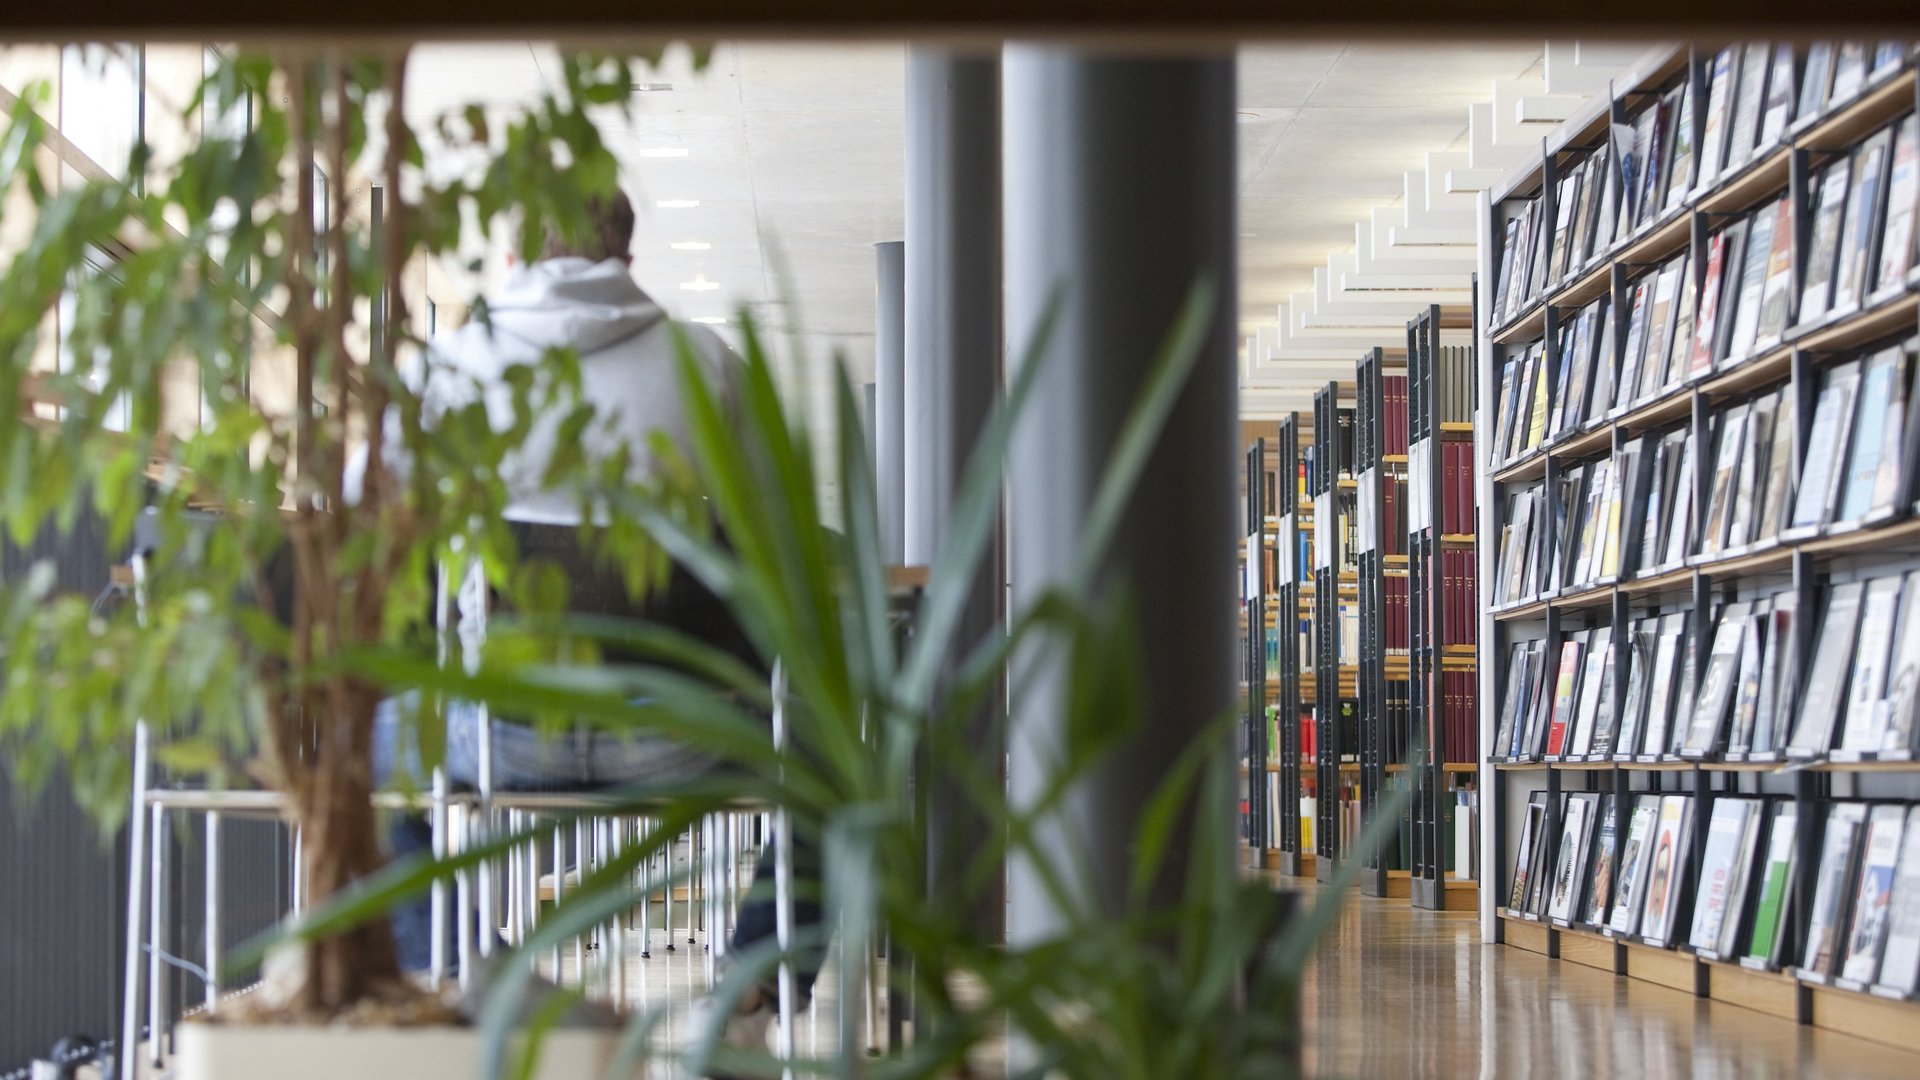 Bücherregale und Pflanzen in der Bibliothek